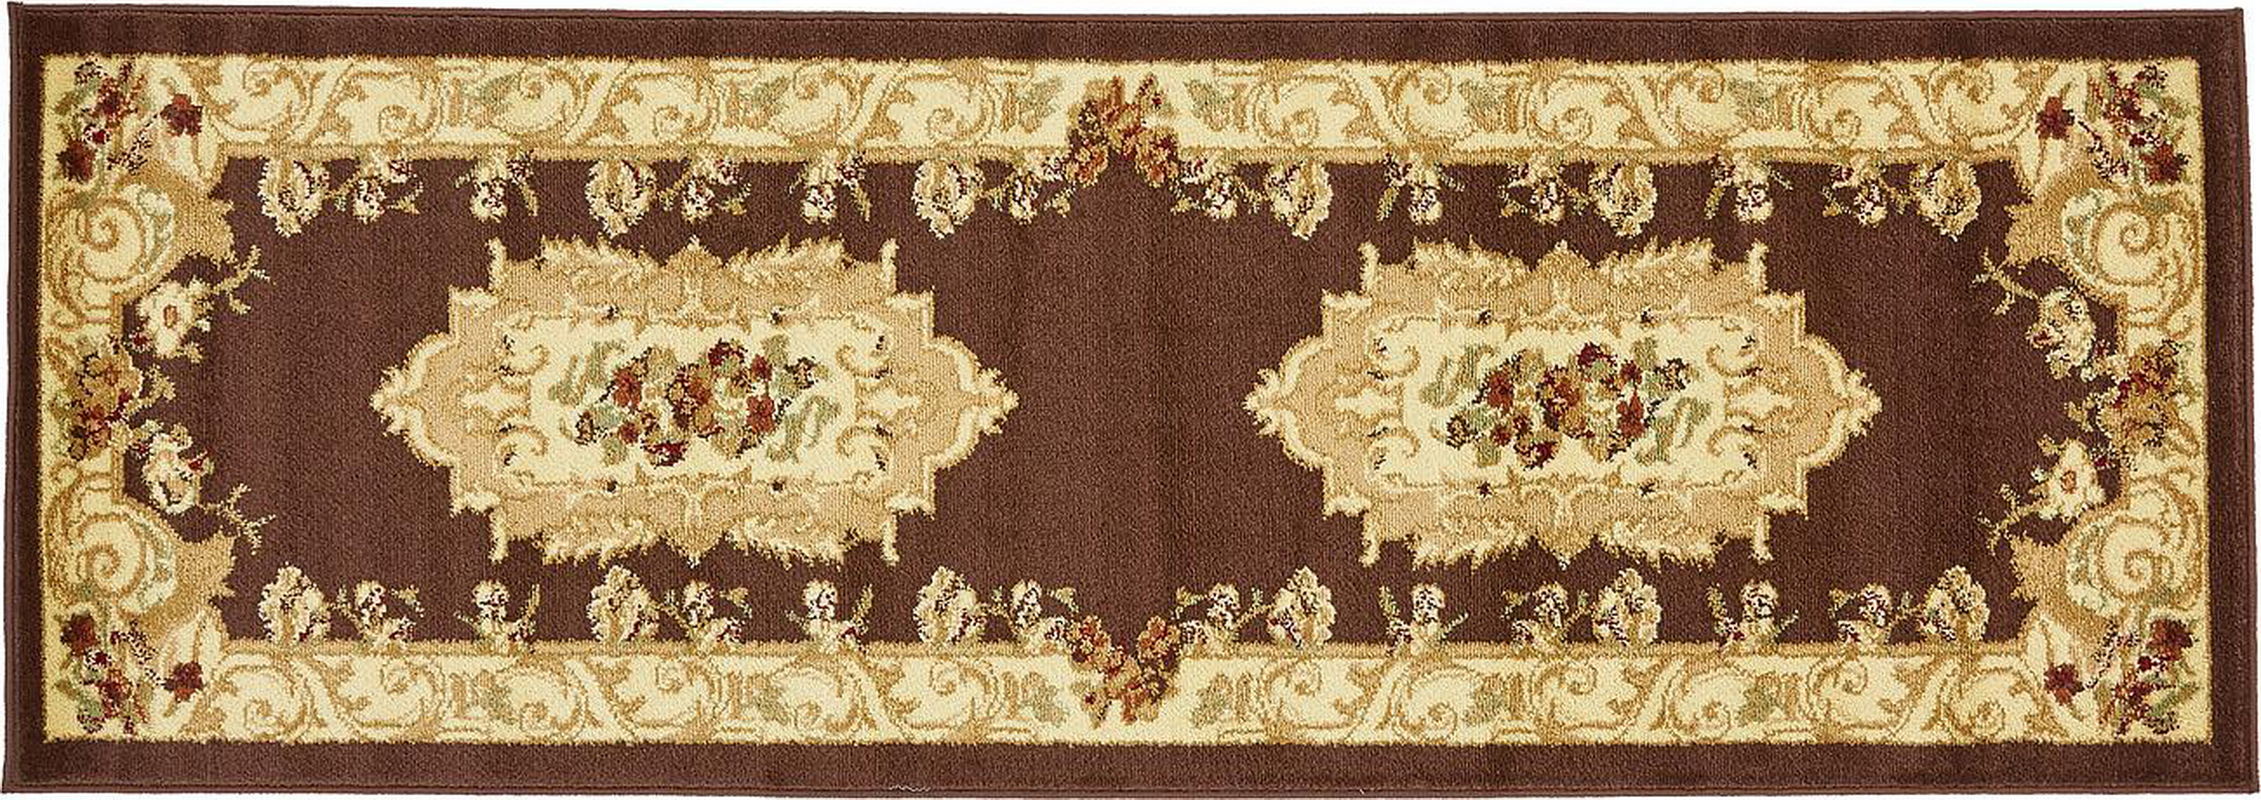 古典经典地毯ID10257